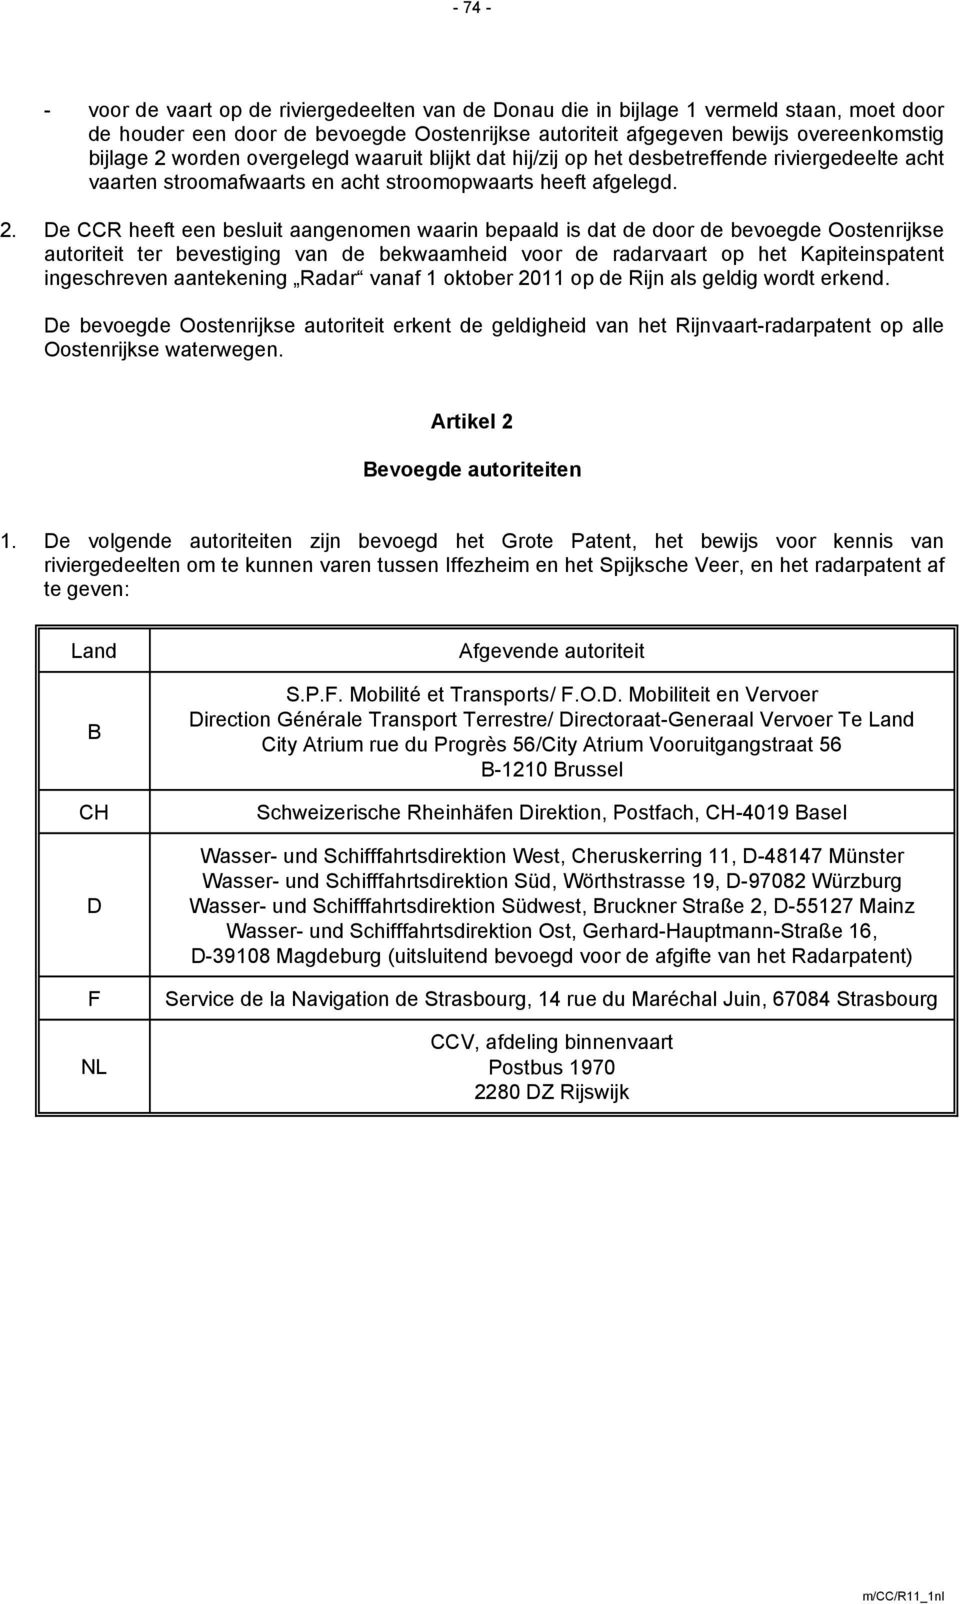 De CCR heeft een besluit aangenomen waarin bepaald is dat de door de bevoegde Oostenrijkse autoriteit ter bevestiging van de bekwaamheid voor de radarvaart op het Kapiteinspatent ingeschreven